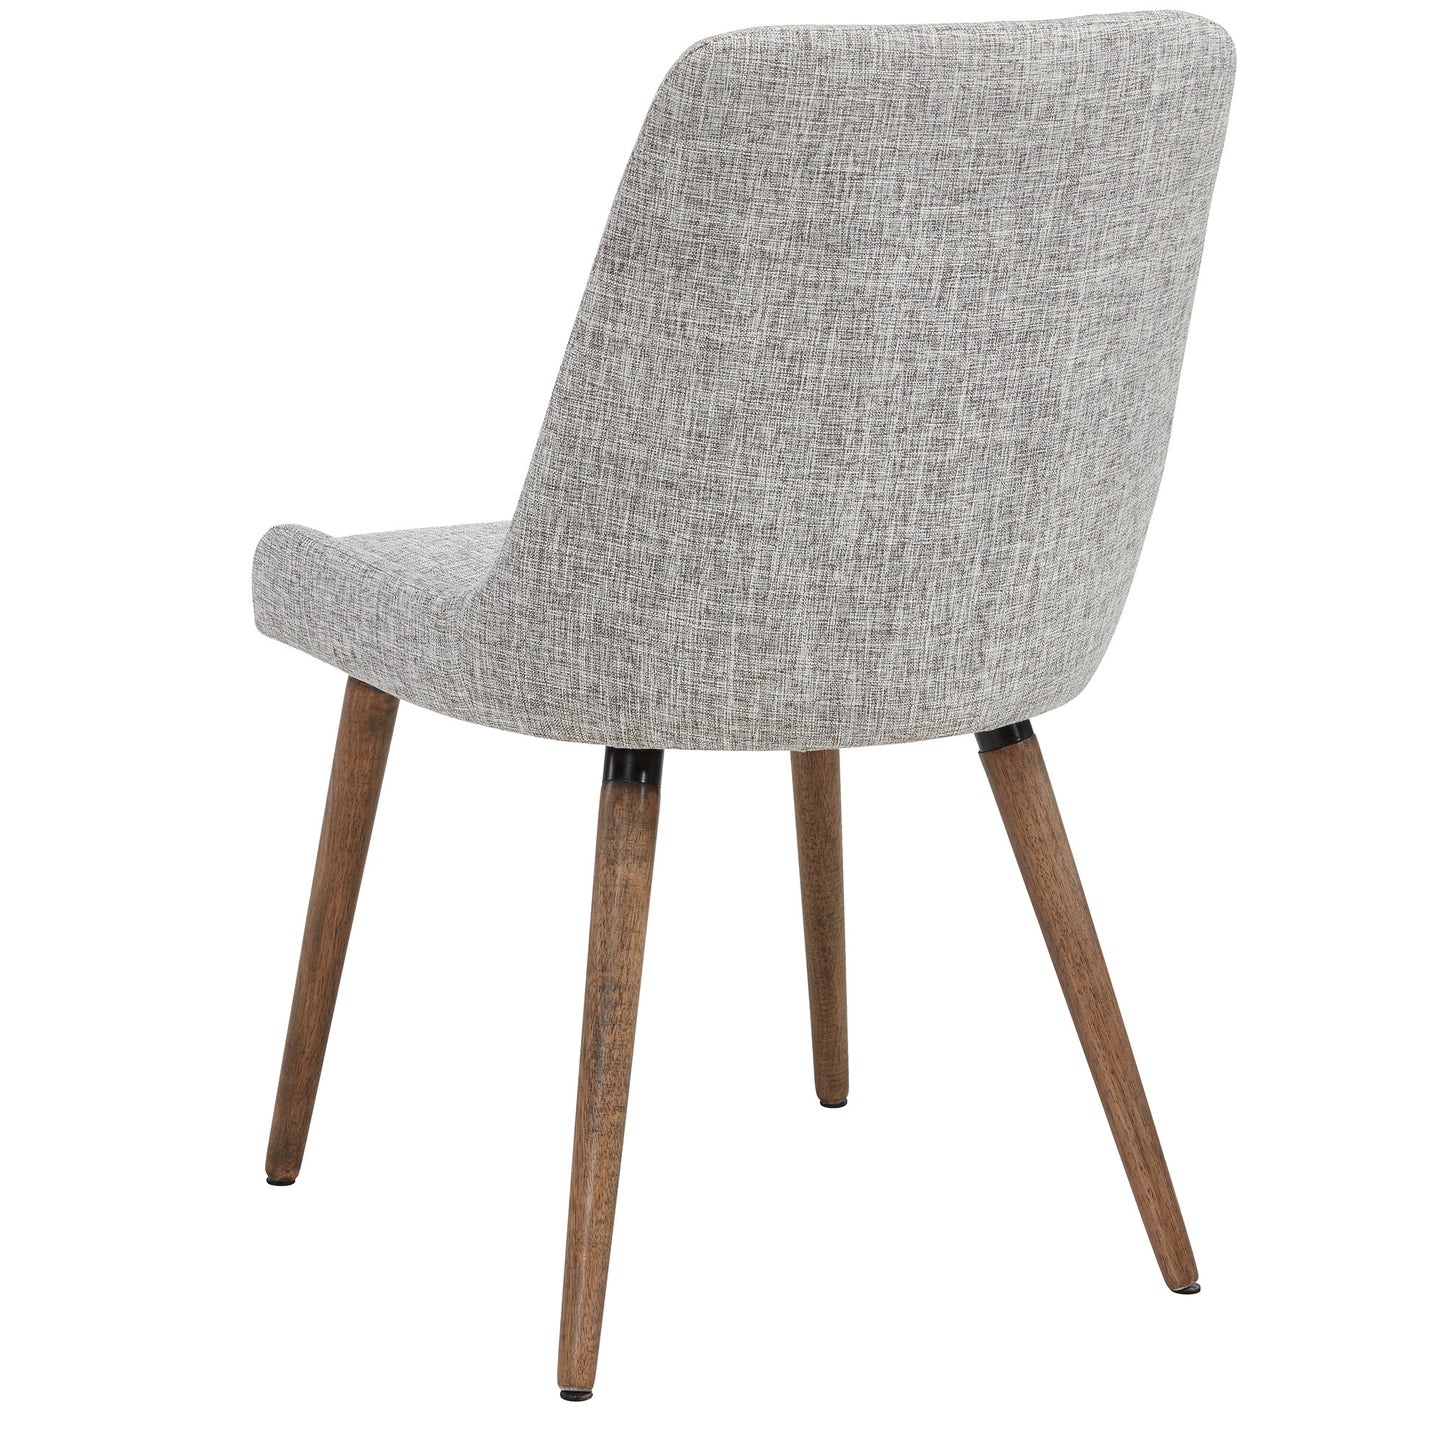 Mia Side Chair - Light Grey/Grey Legs